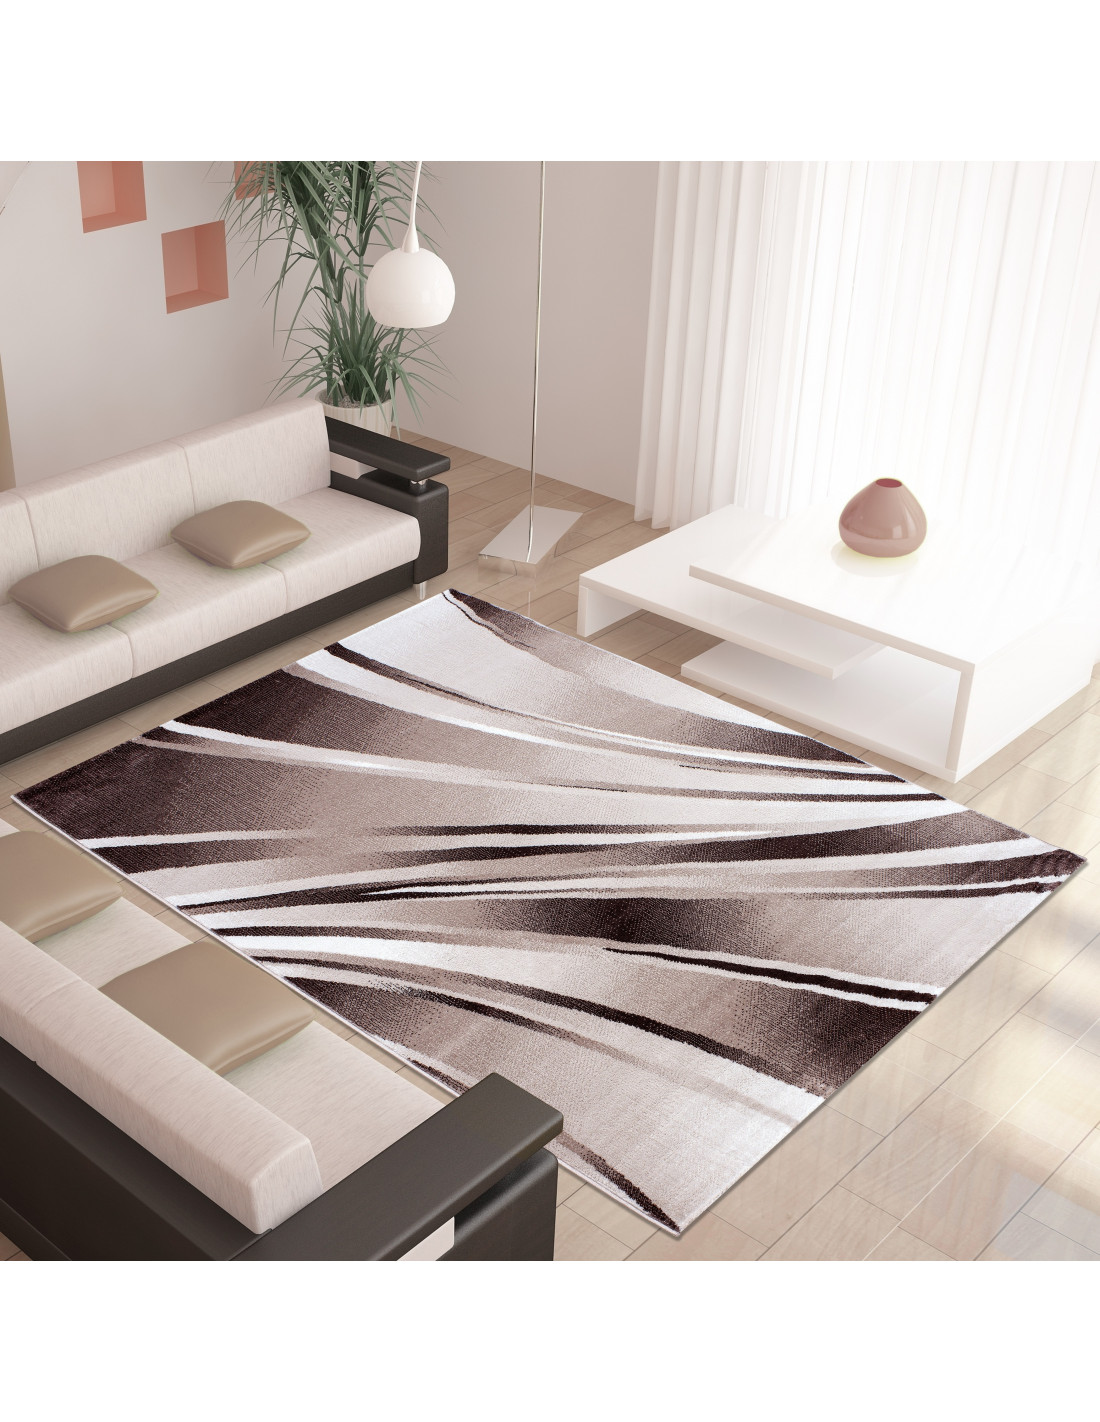 Modern designer living room rug Parma 9210 brown